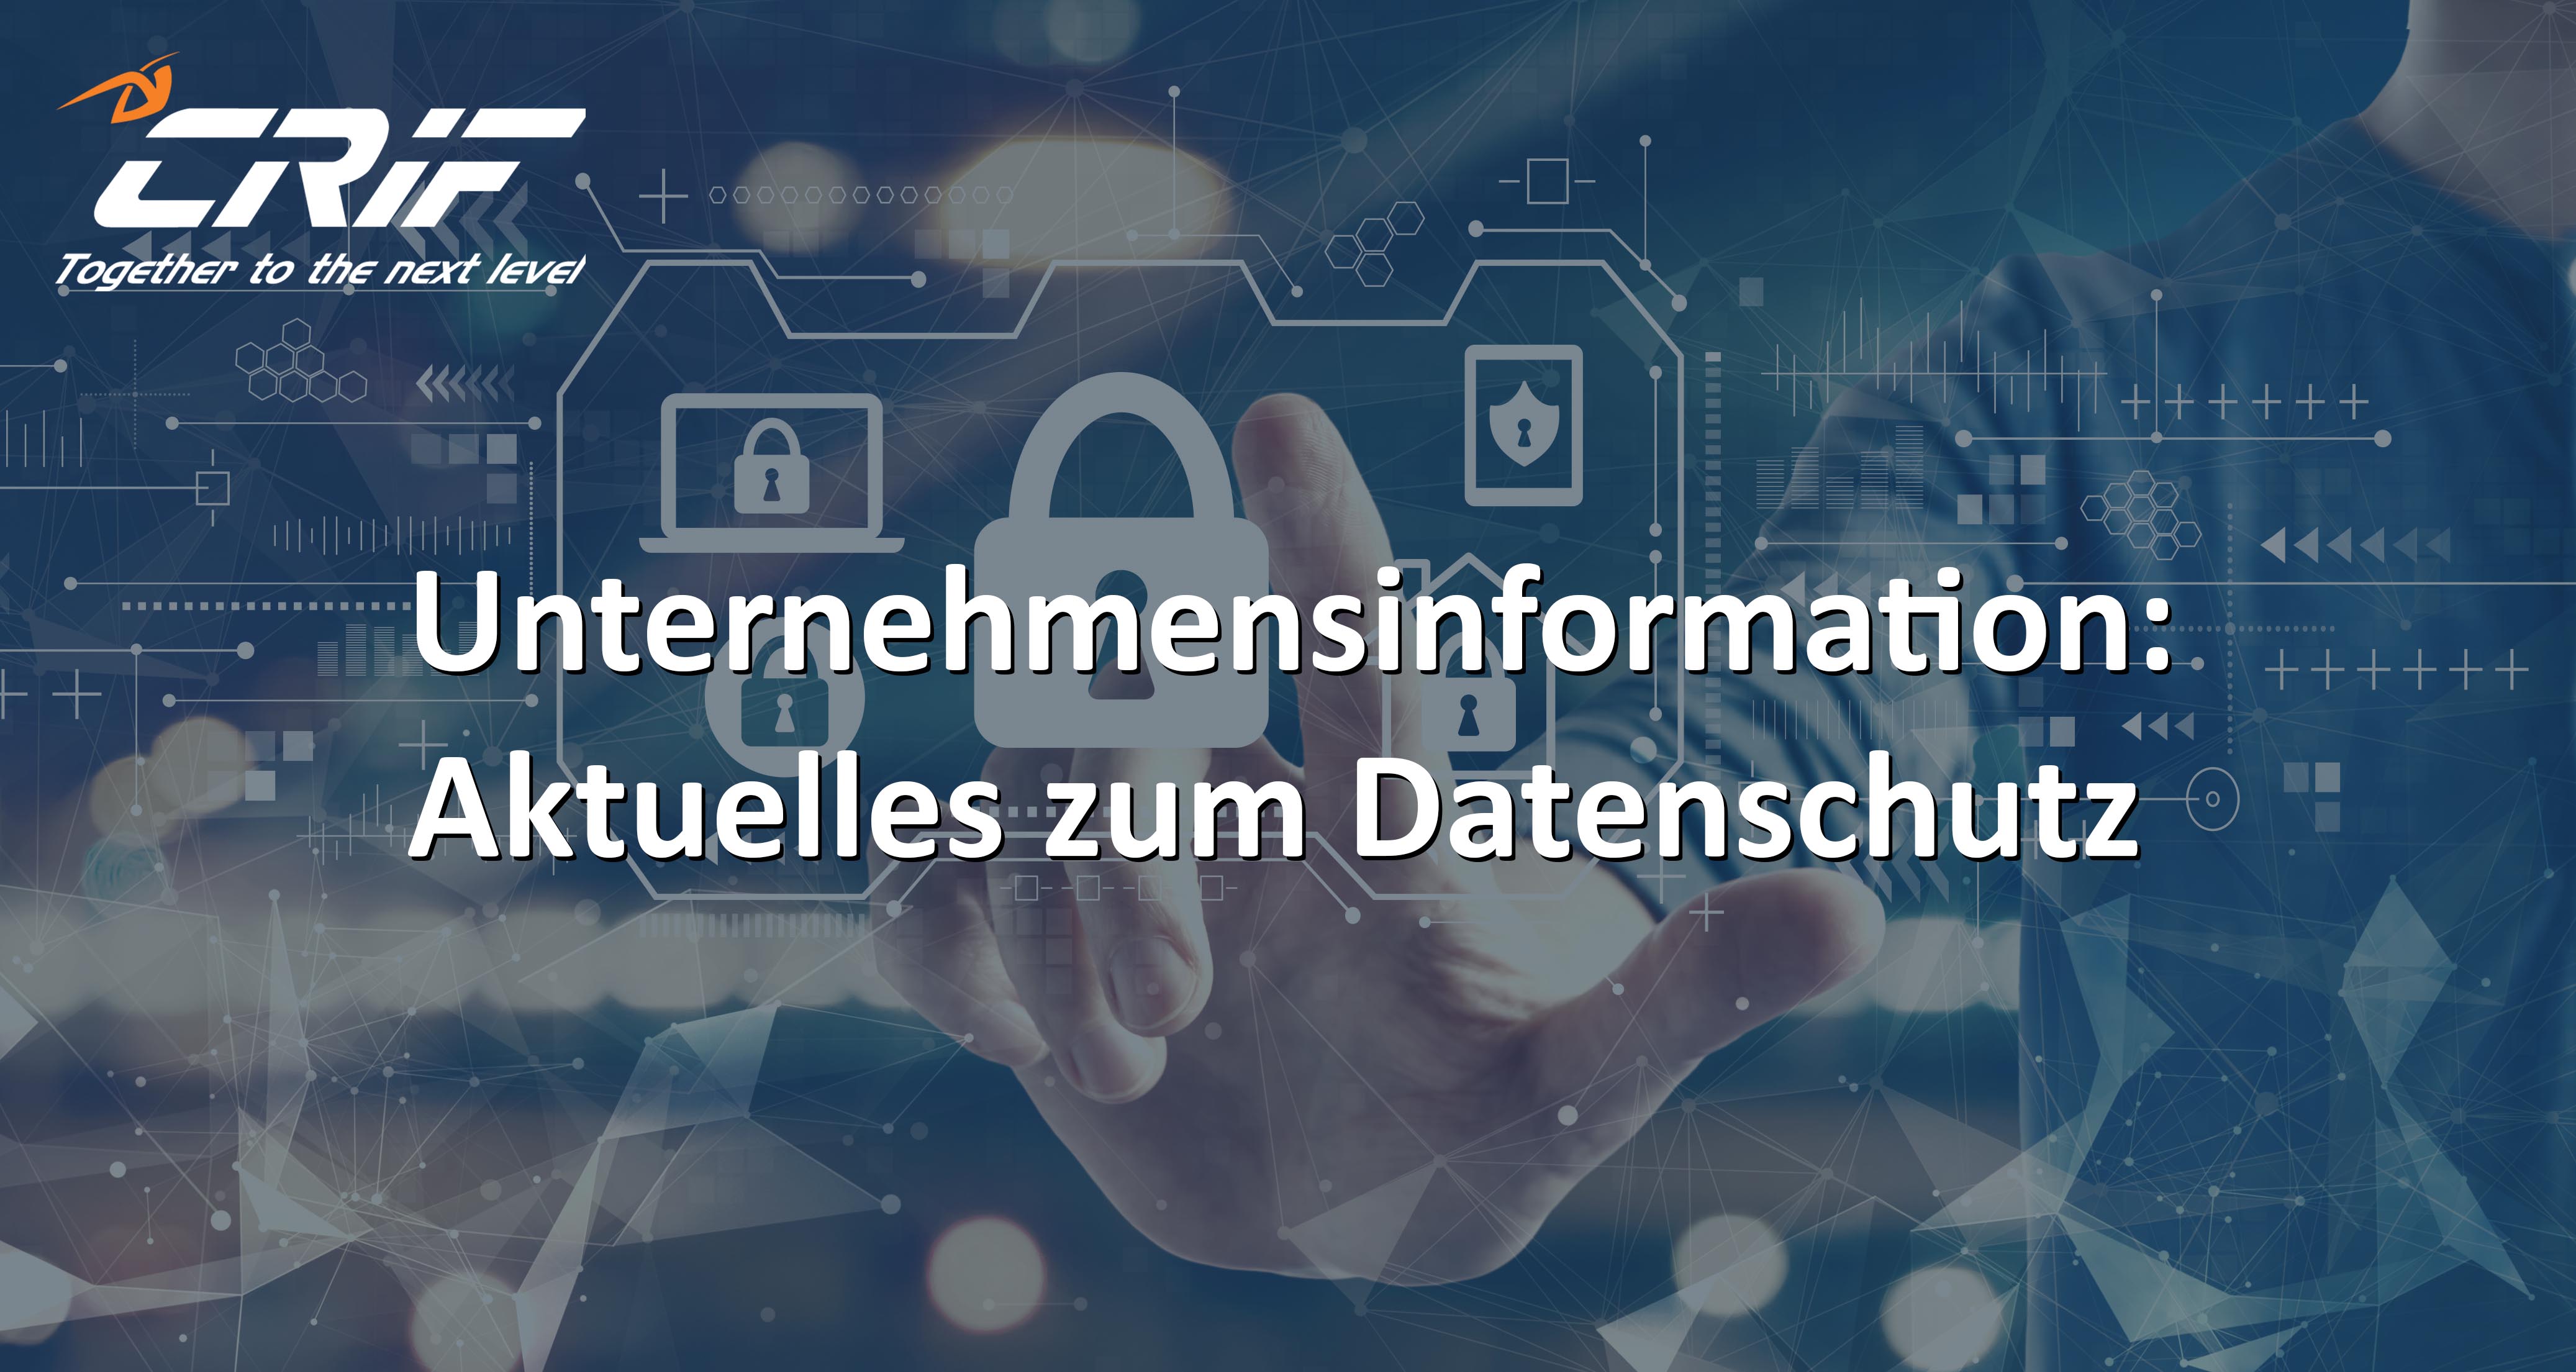 Unternehmensinformation_Datenschutz_shutterstock_1669180291 copy.jpg